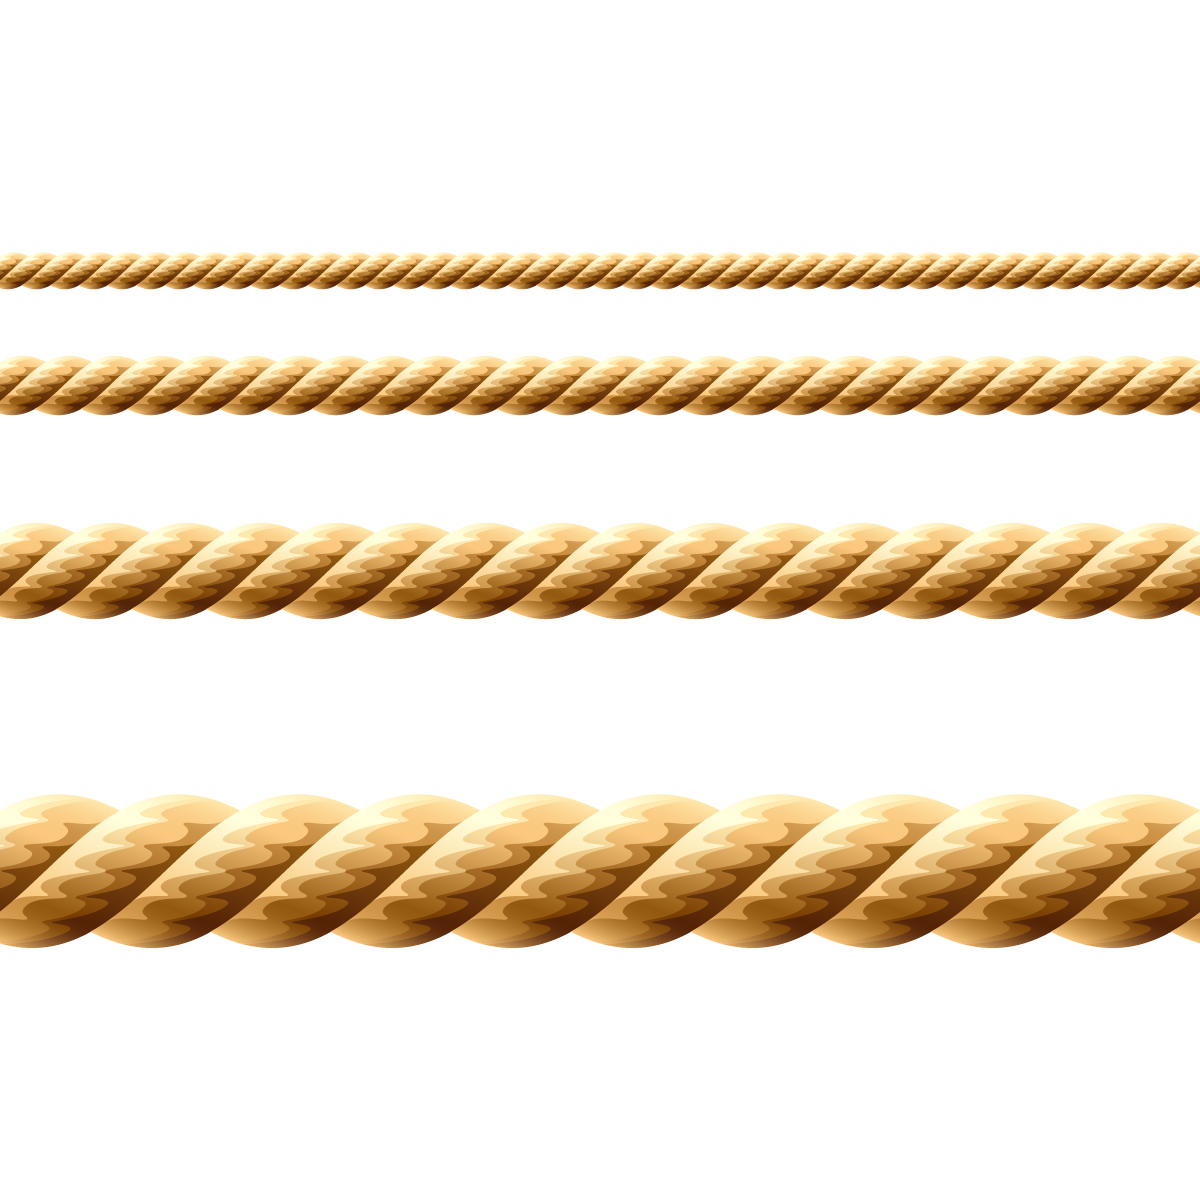 Gold rope. Морской канат. Канат на белом фоне. Плетеная веревка вектор. Горизонтальный канат.